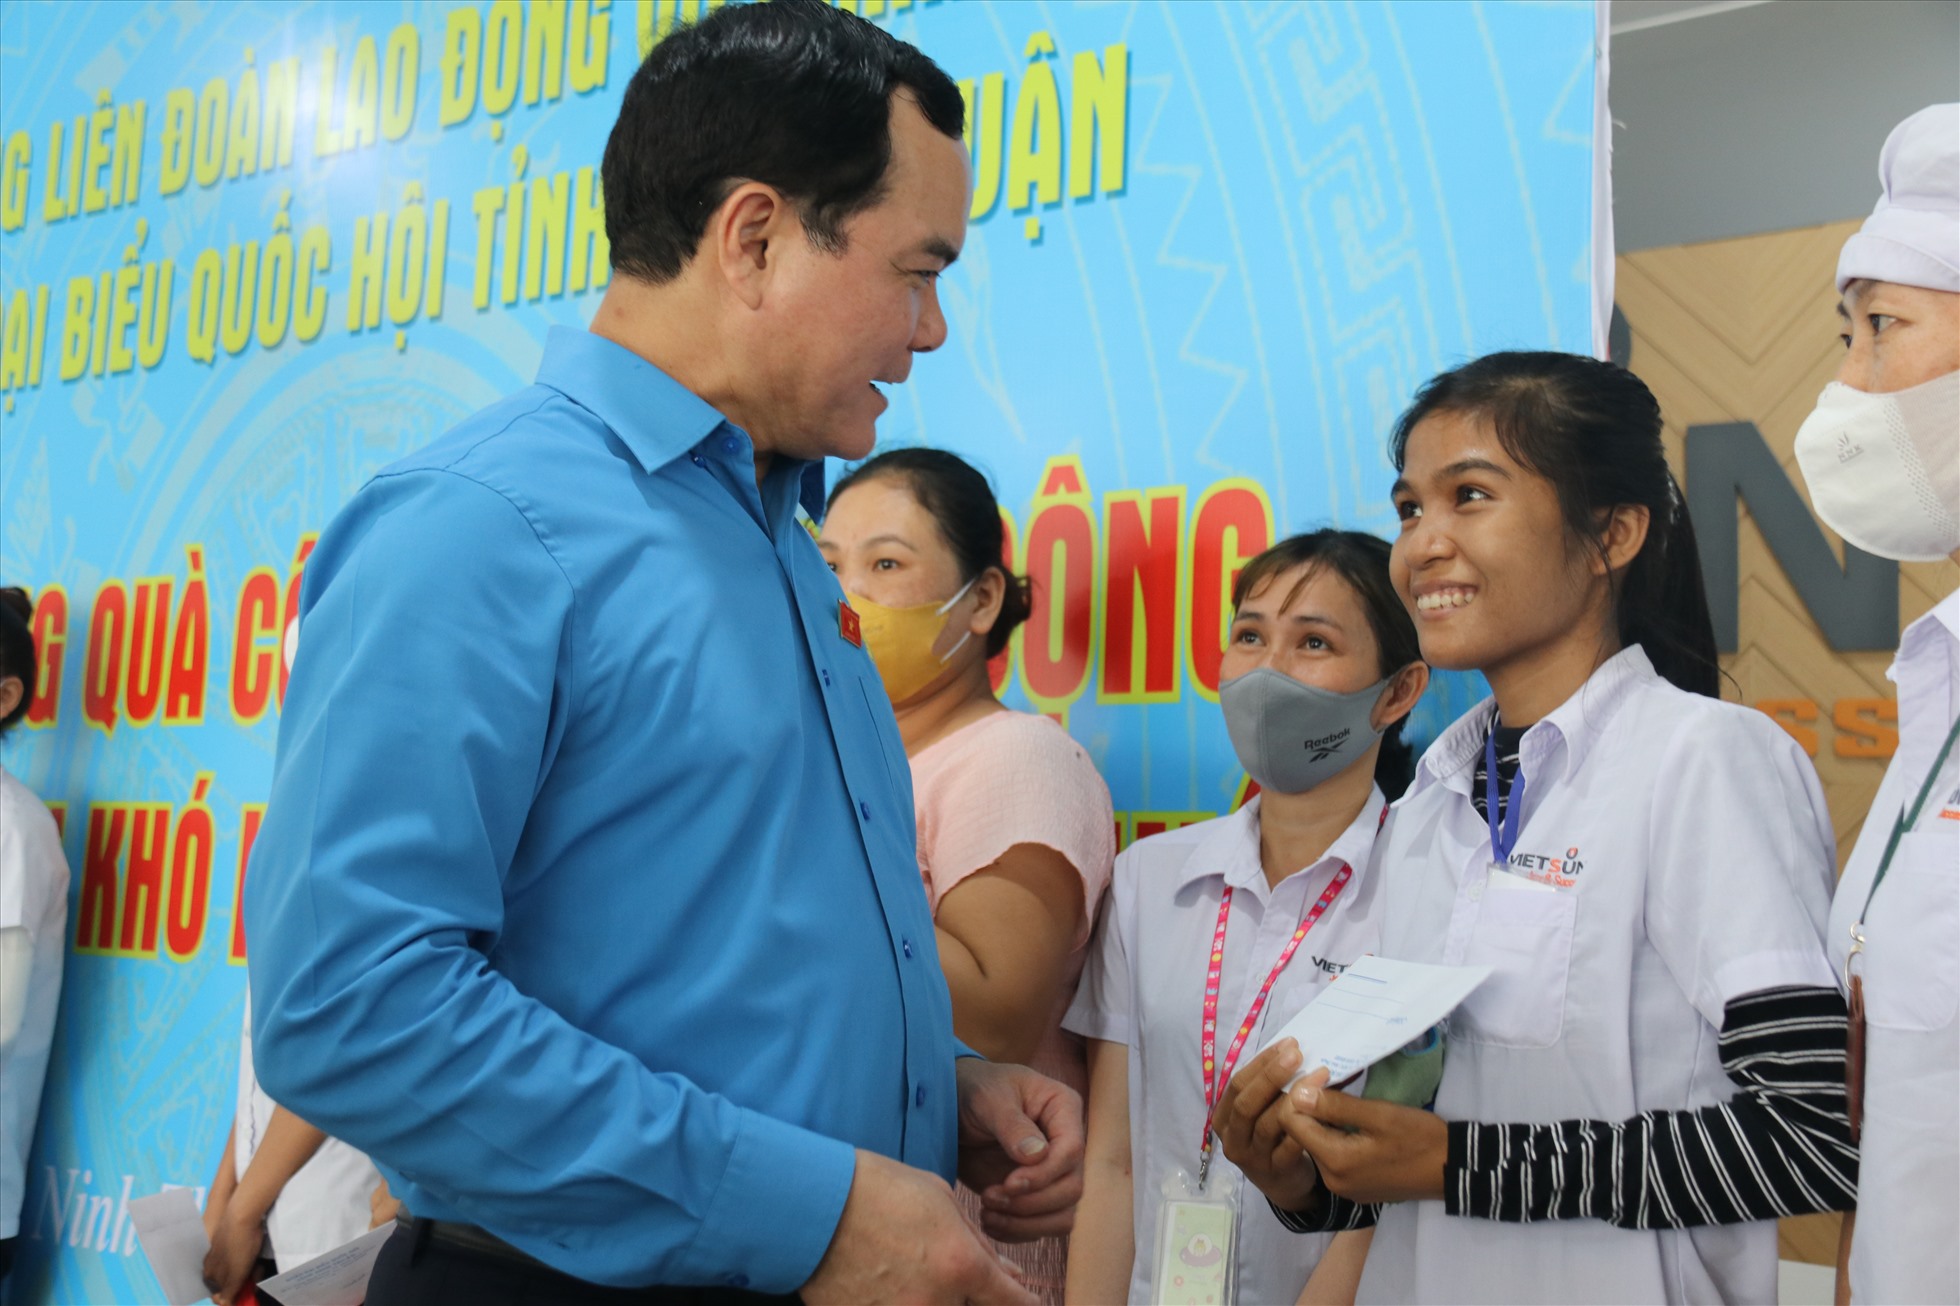 Những phần quà trao tay CNLĐ tại Ninh Thuận không chỉ góp phần giúp công nhân cải thiện đời sống mà còn tạo niềm tin, khích lệ tinh thần lao động vượt khó của đoàn viên. Ảnh: Phương Linh